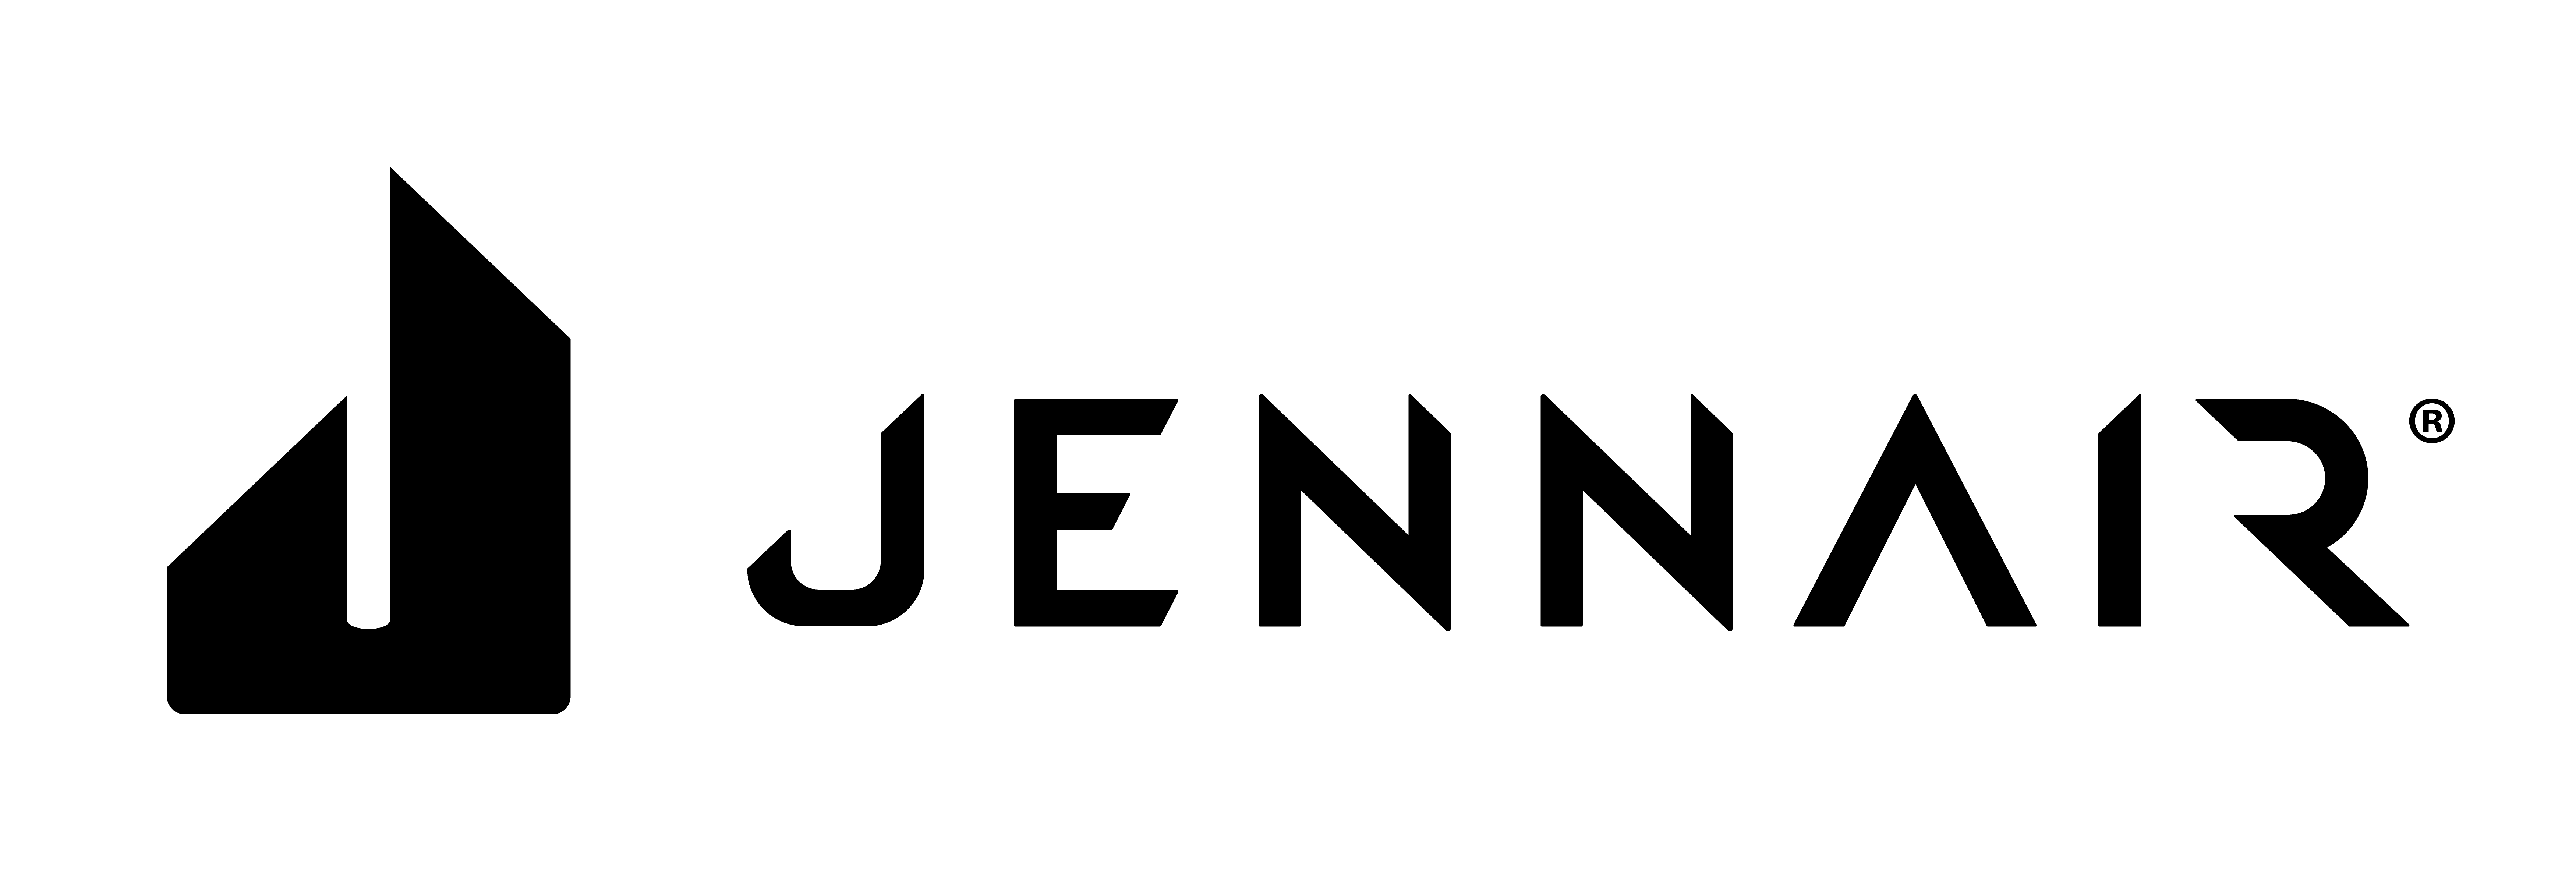  JennAir Brand Logo 2018